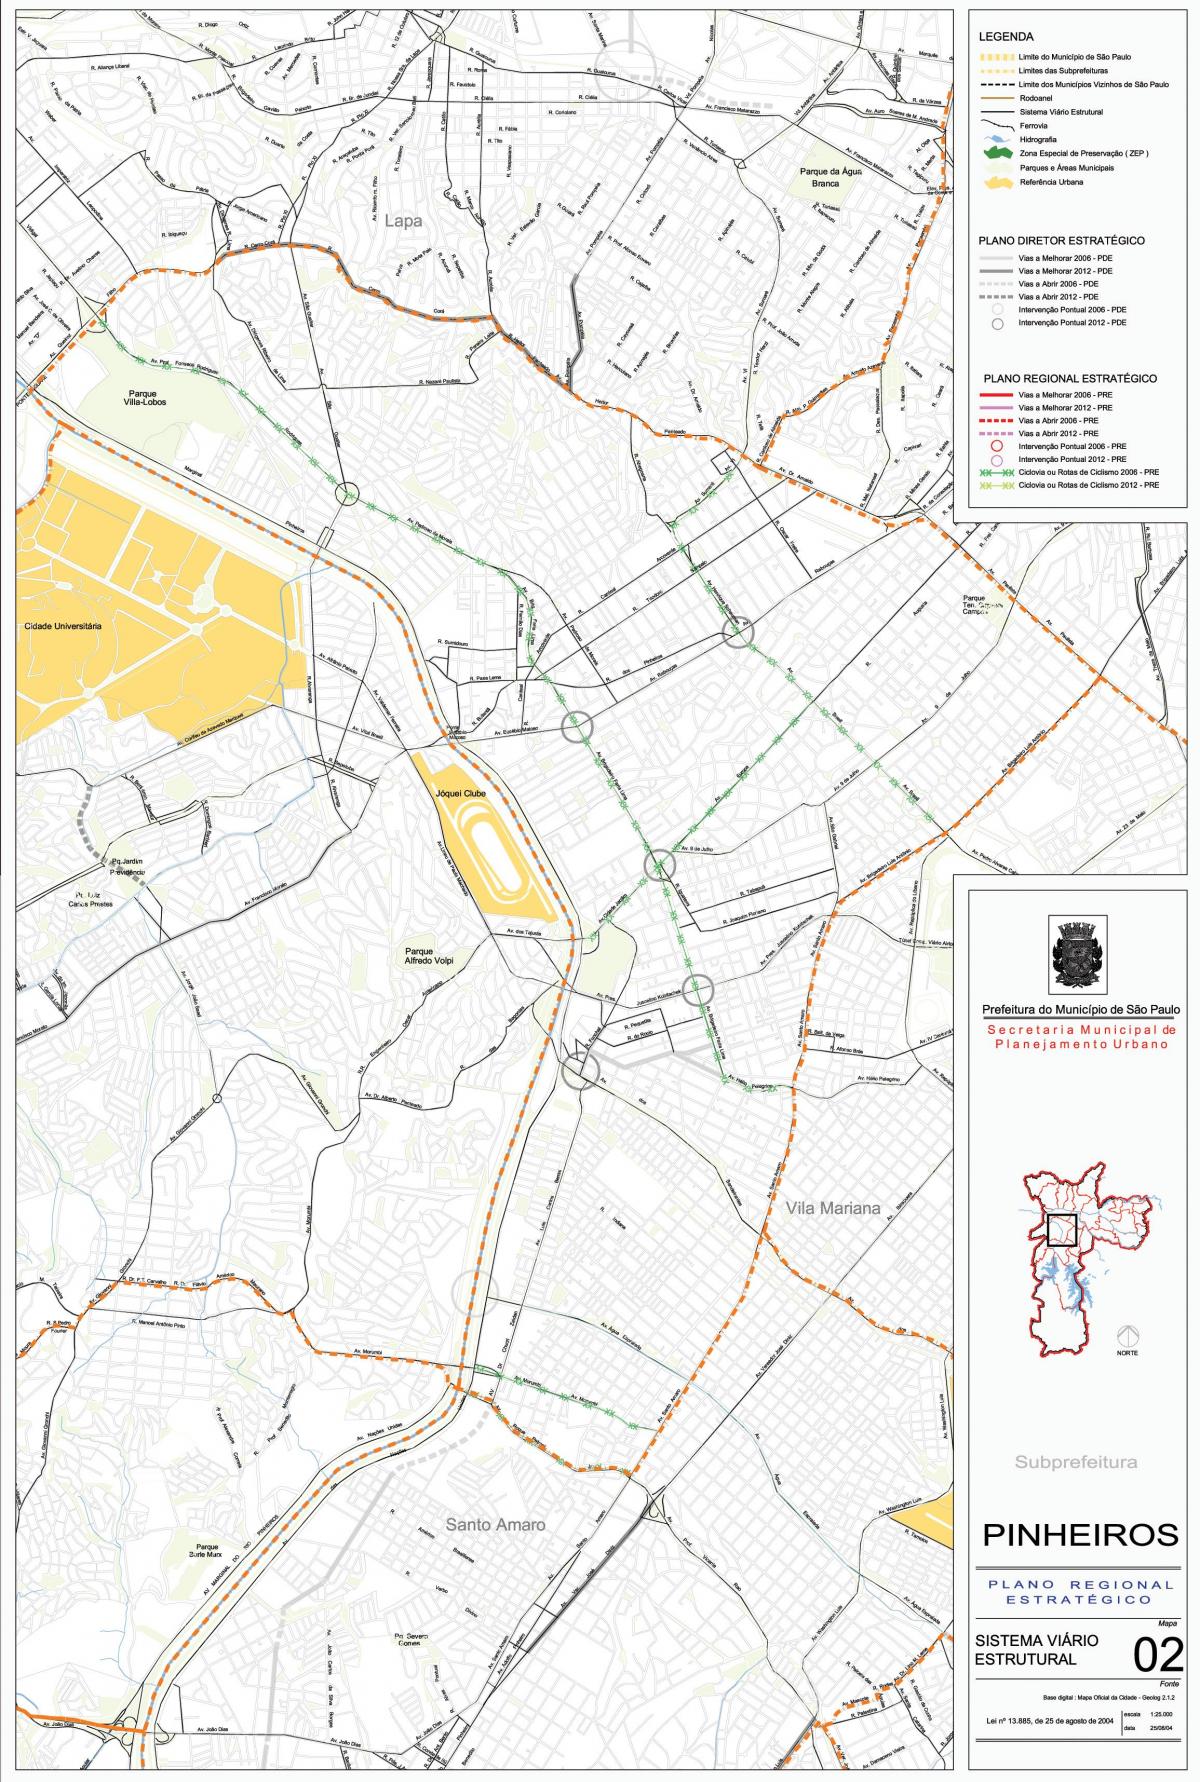 Map of Pinheiros São Paulo - Roads